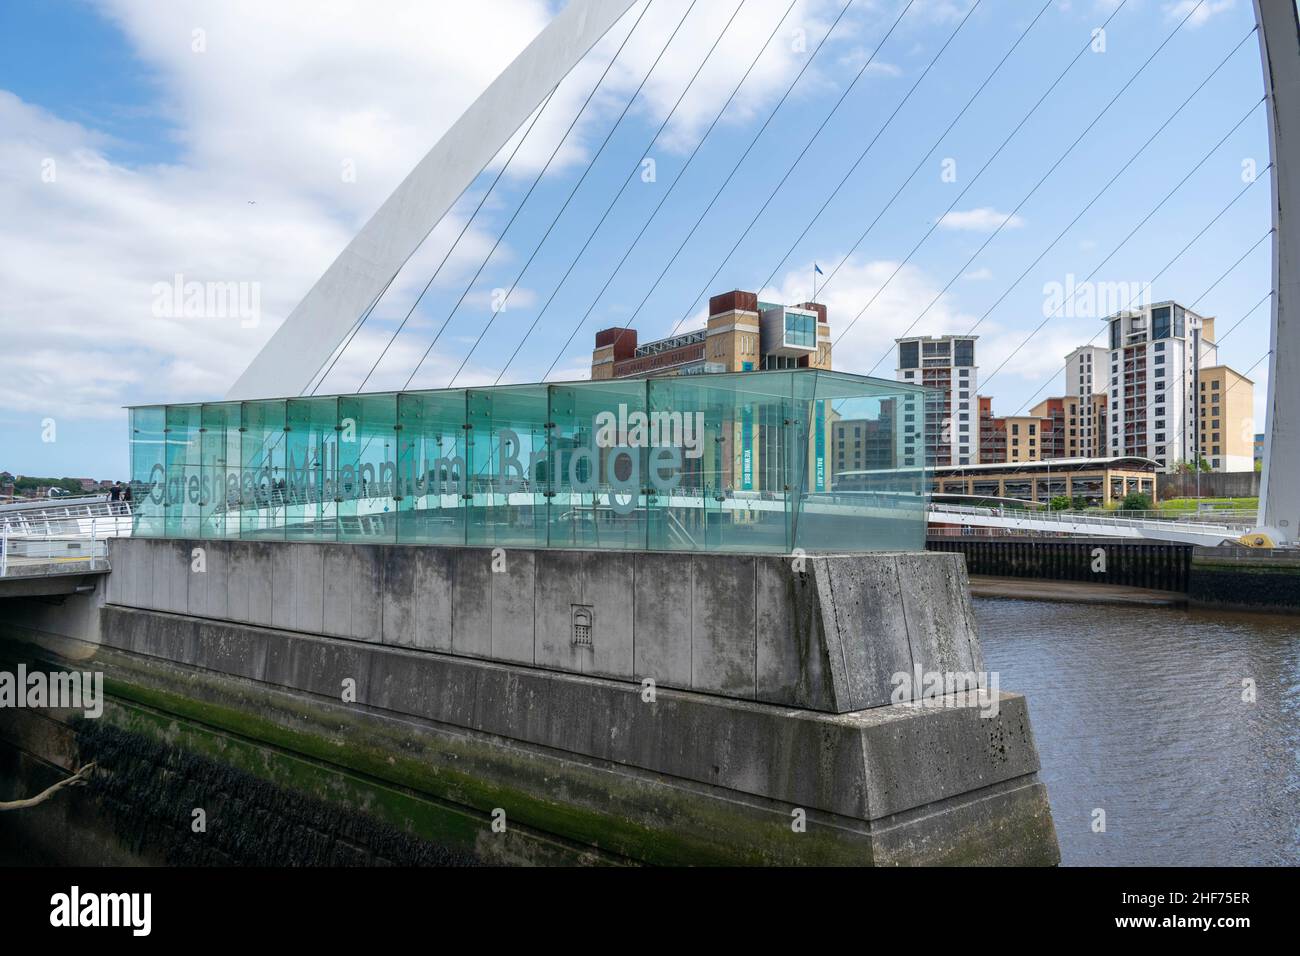 Newcastle, UK - 7 maggio 2019: Gateshead Millennium Bridge è un ponte pedonale e ciclista che attraversa il fiume Tyne. I mulini di farina del Baltico derelict b Foto Stock